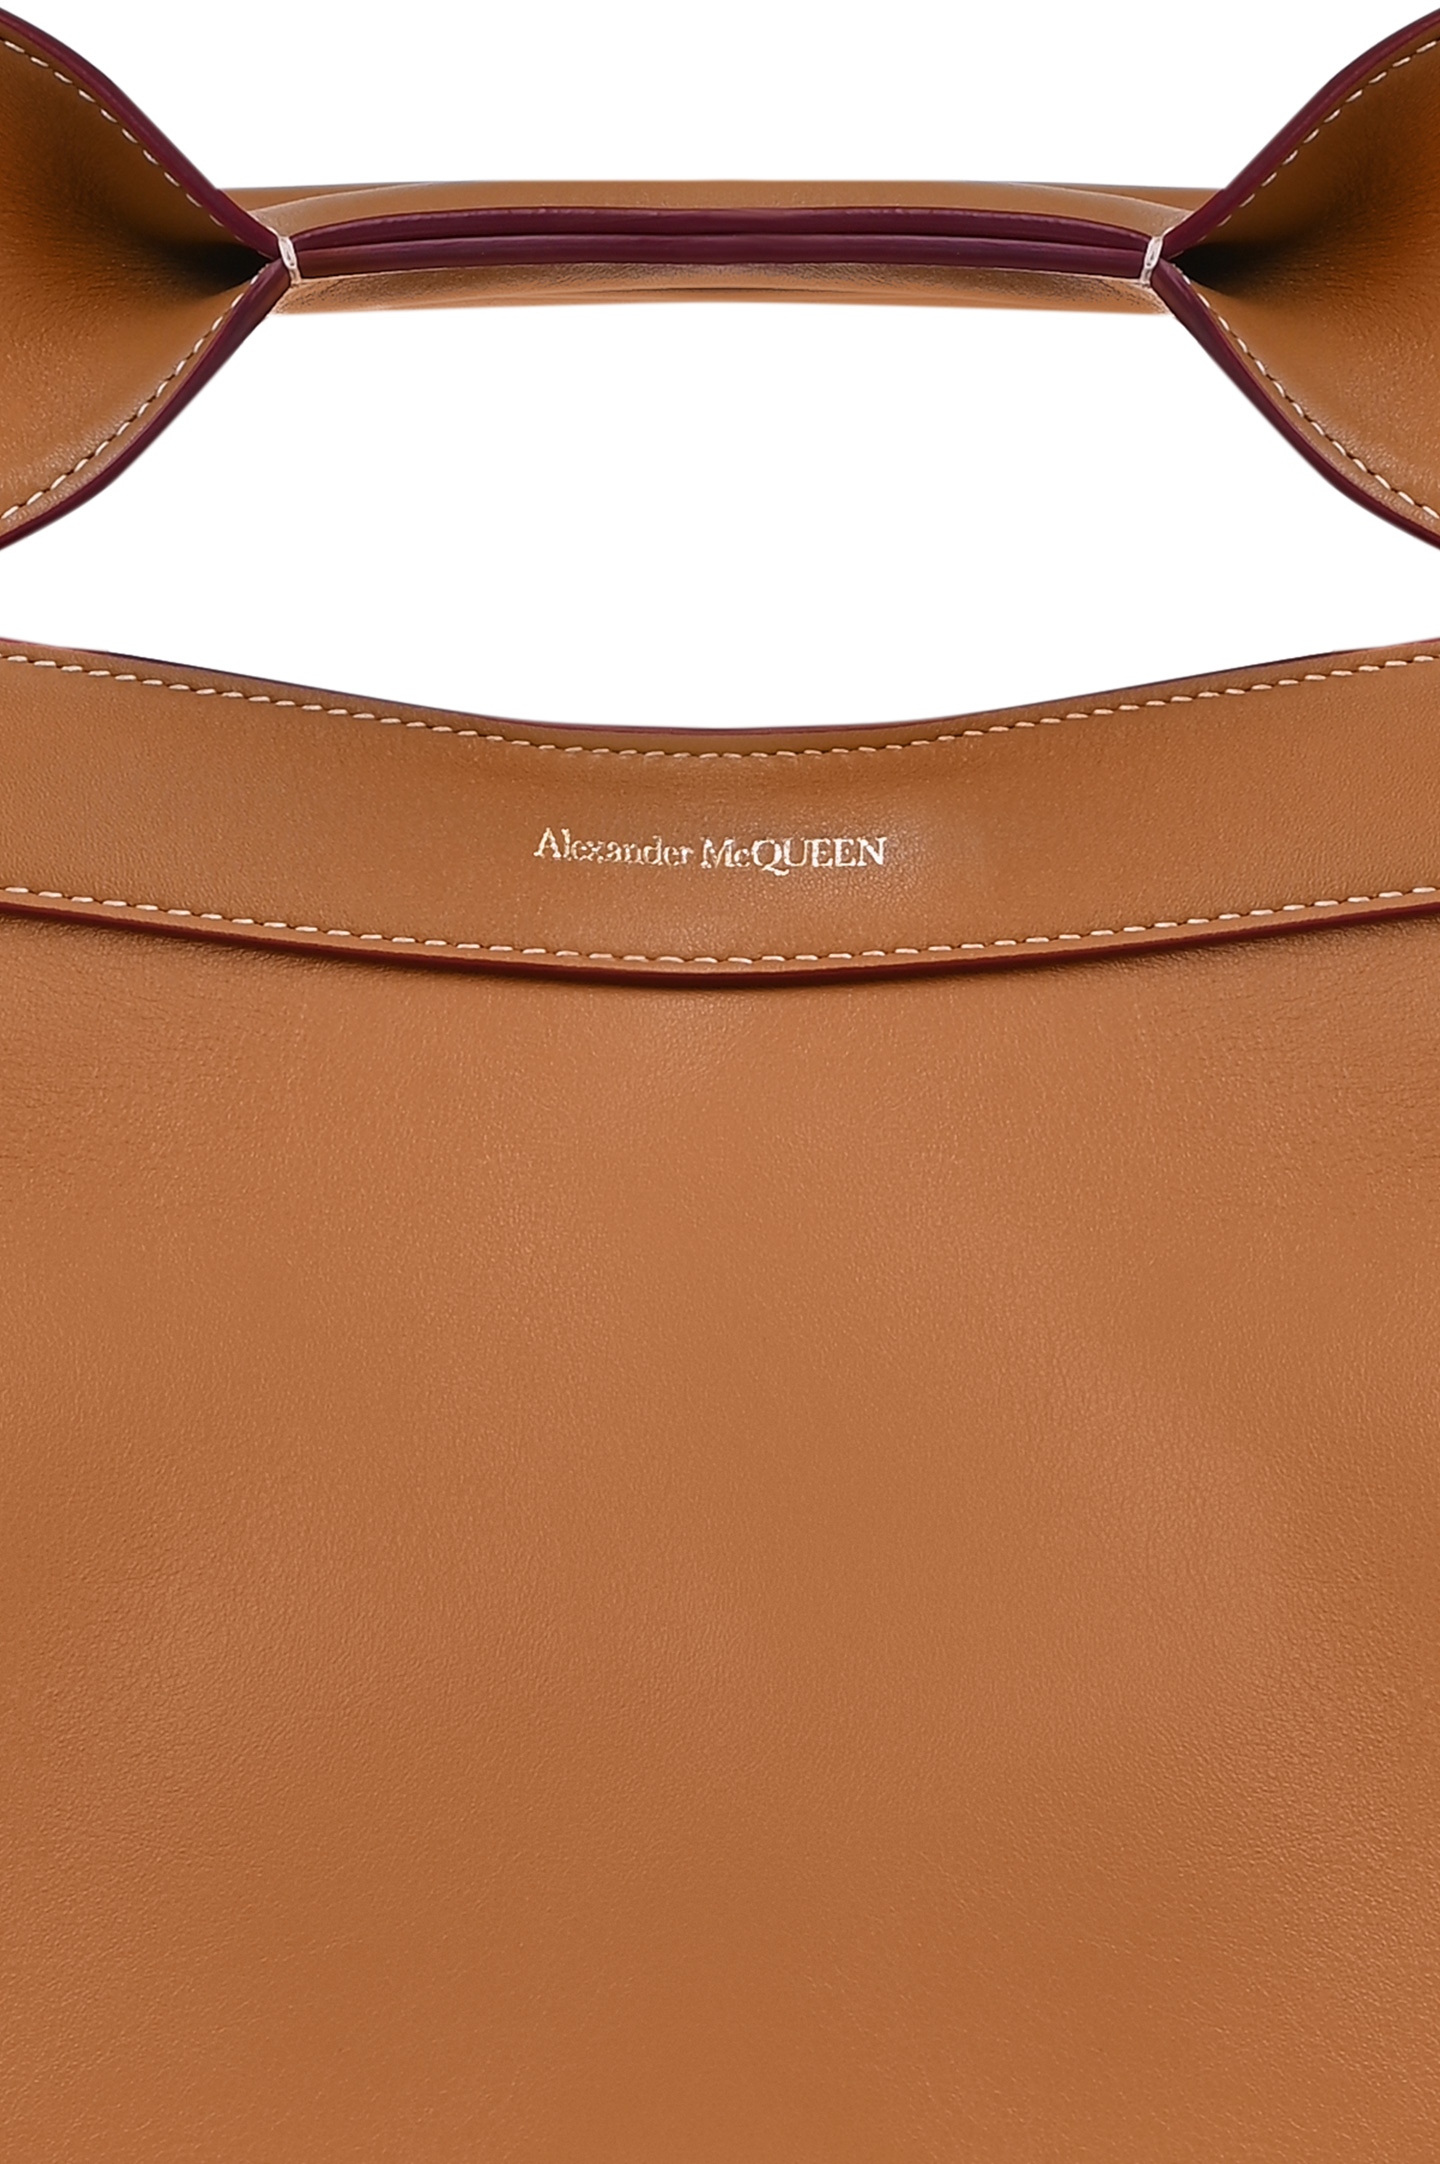 Кожаная сумка с кошельком ALEXANDER MCQUEEN 47095661BLCA, цвет: Коричневый, Женский